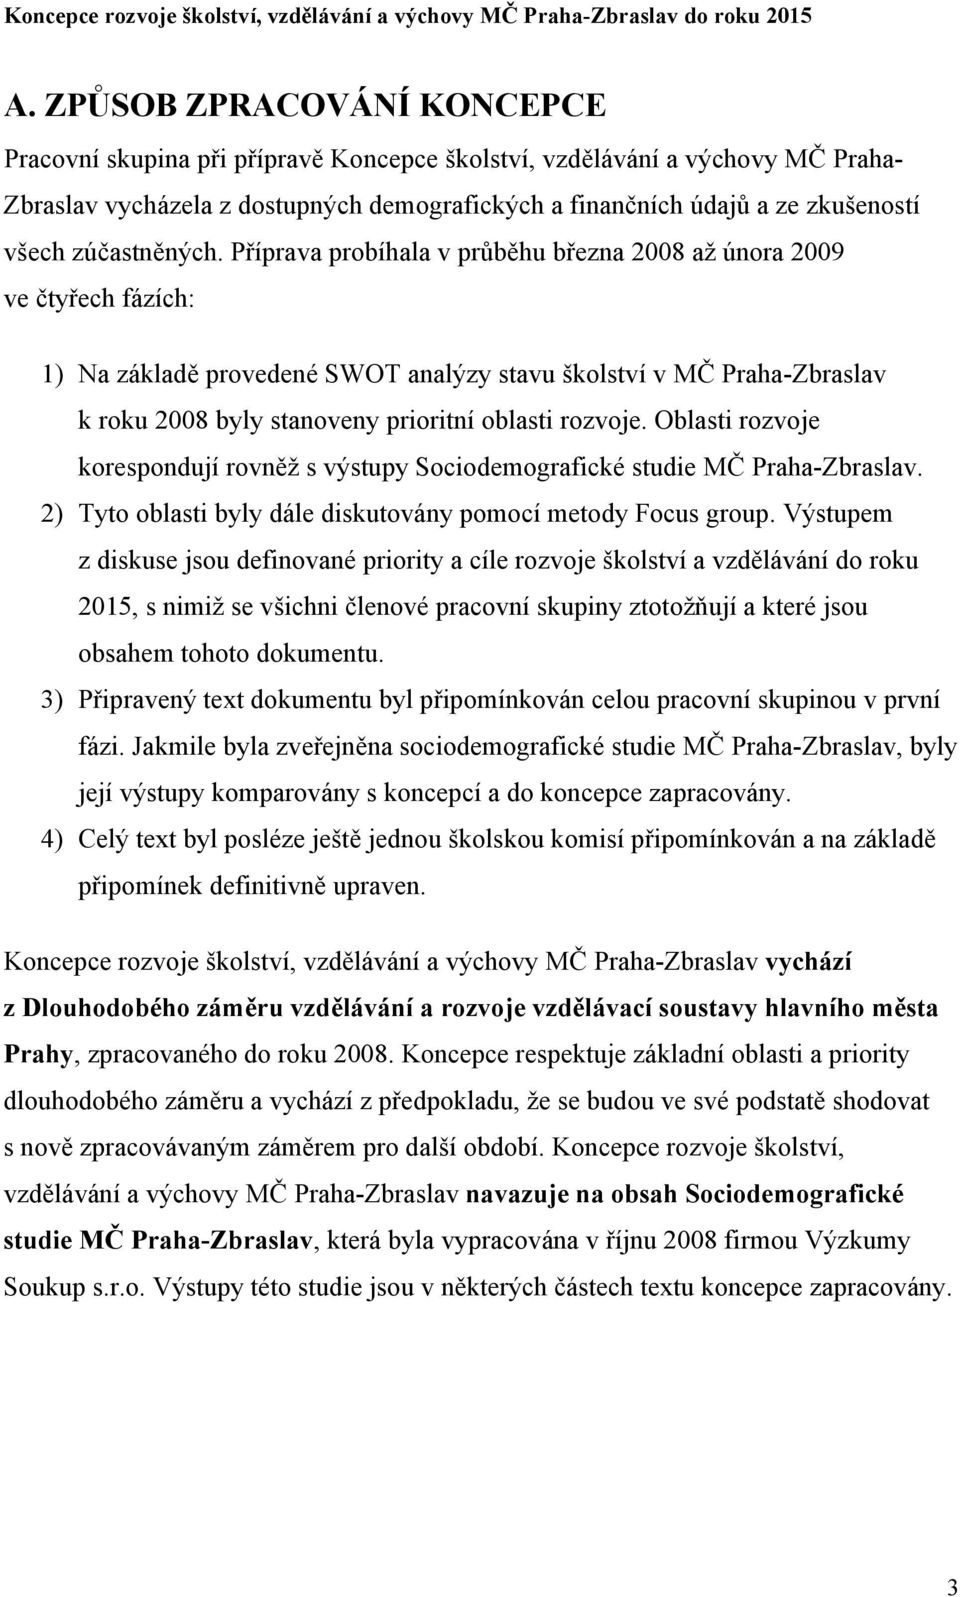 Příprava probíhala v průběhu března 2008 až února 2009 ve čtyřech fázích: 1) Na základě provedené SWOT analýzy stavu školství v MČ Praha-Zbraslav k roku 2008 byly stanoveny prioritní oblasti rozvoje.